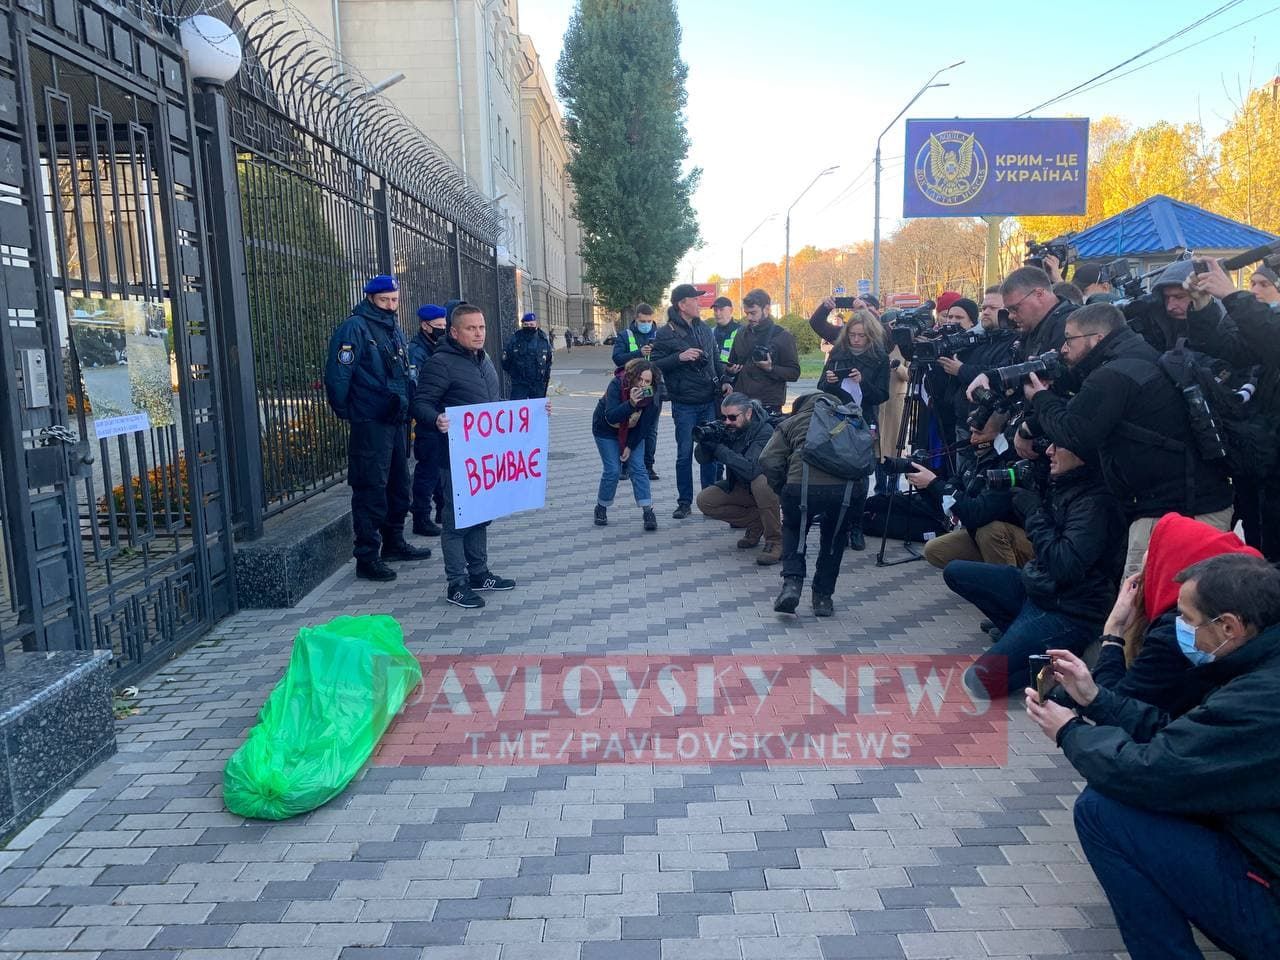 Под Посольство РФ в Киеве принесли мешок, символизирующий труп умершего: на заборе развешаны фото из Донецка